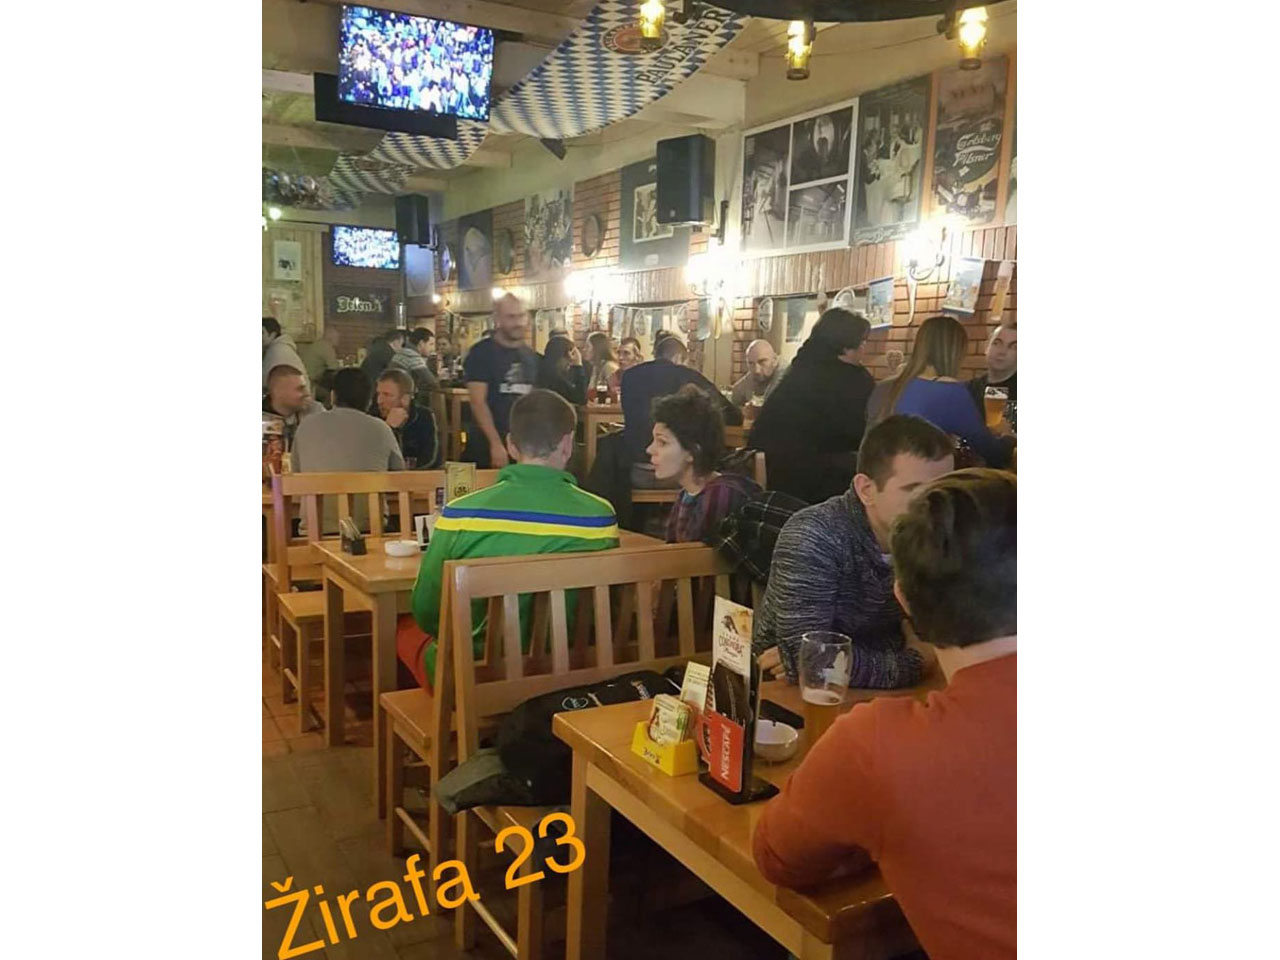 Photo 4 - ZIRAFA PUB 23 Pubs Belgrade